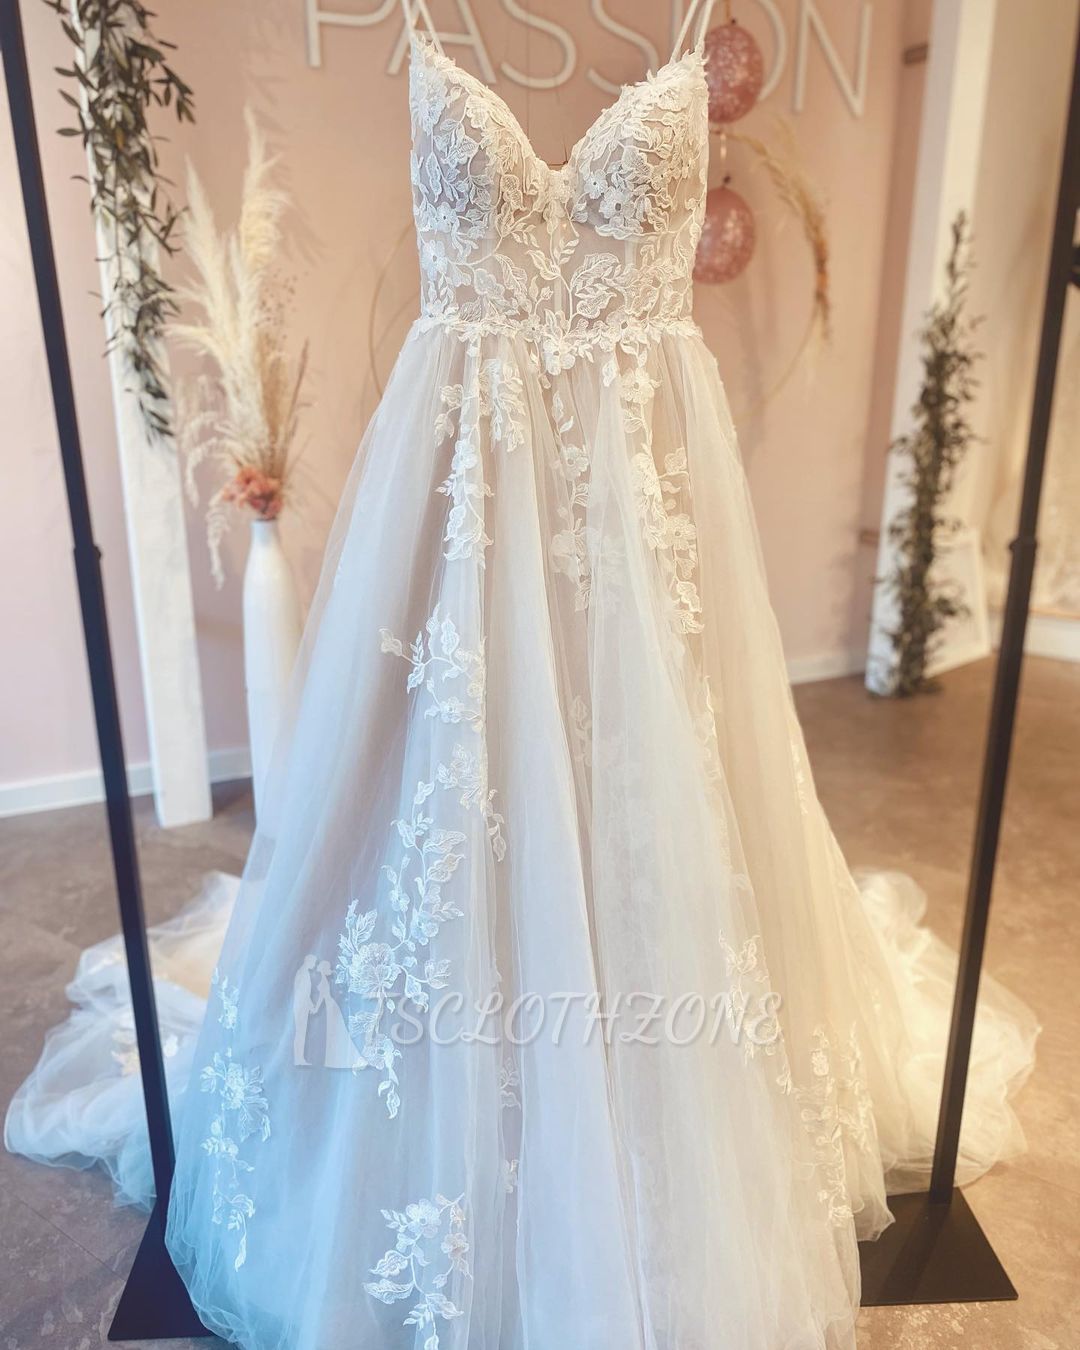 Romantic Spaghetti Straps White Floral Tulle Wedding Dress Sleeveless Aline Floor Length Dress for Weddings